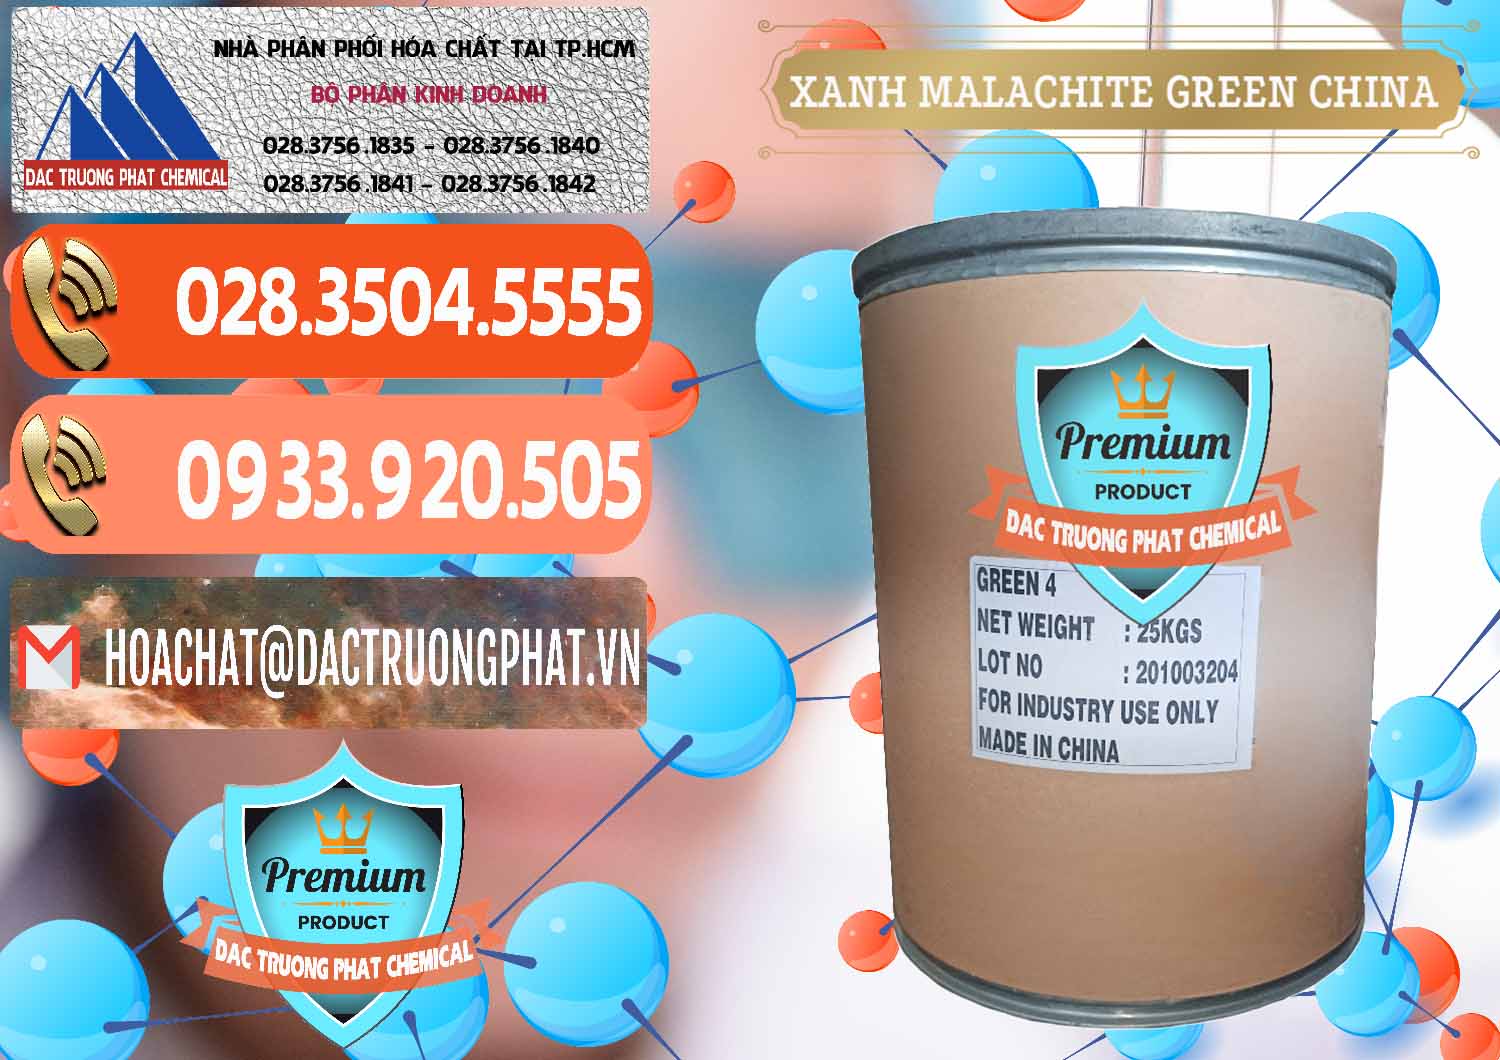 Cty chuyên bán và cung cấp Xanh Malachite Green Trung Quốc China - 0325 - Nơi cung cấp ( bán ) hóa chất tại TP.HCM - hoachatmientay.com